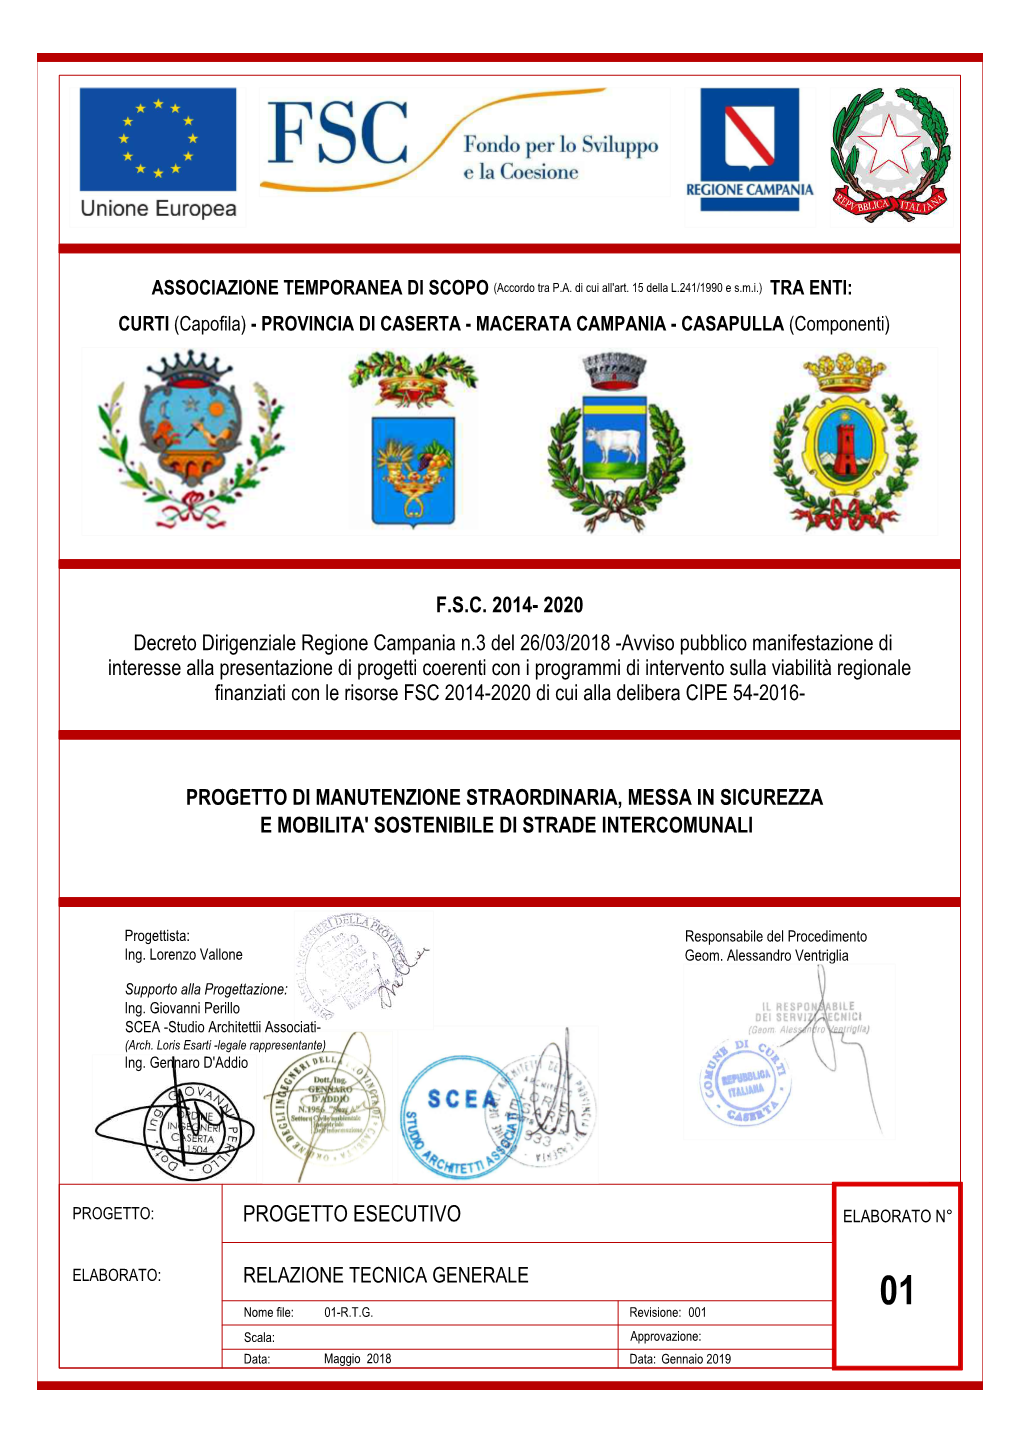 PROGETTO ESECUTIVO F.S.C. 2014- 2020 Decreto Dirigenziale Regione Campania N.3 Del 26/03/2018 -Avviso Pubblico Manifestazione Di